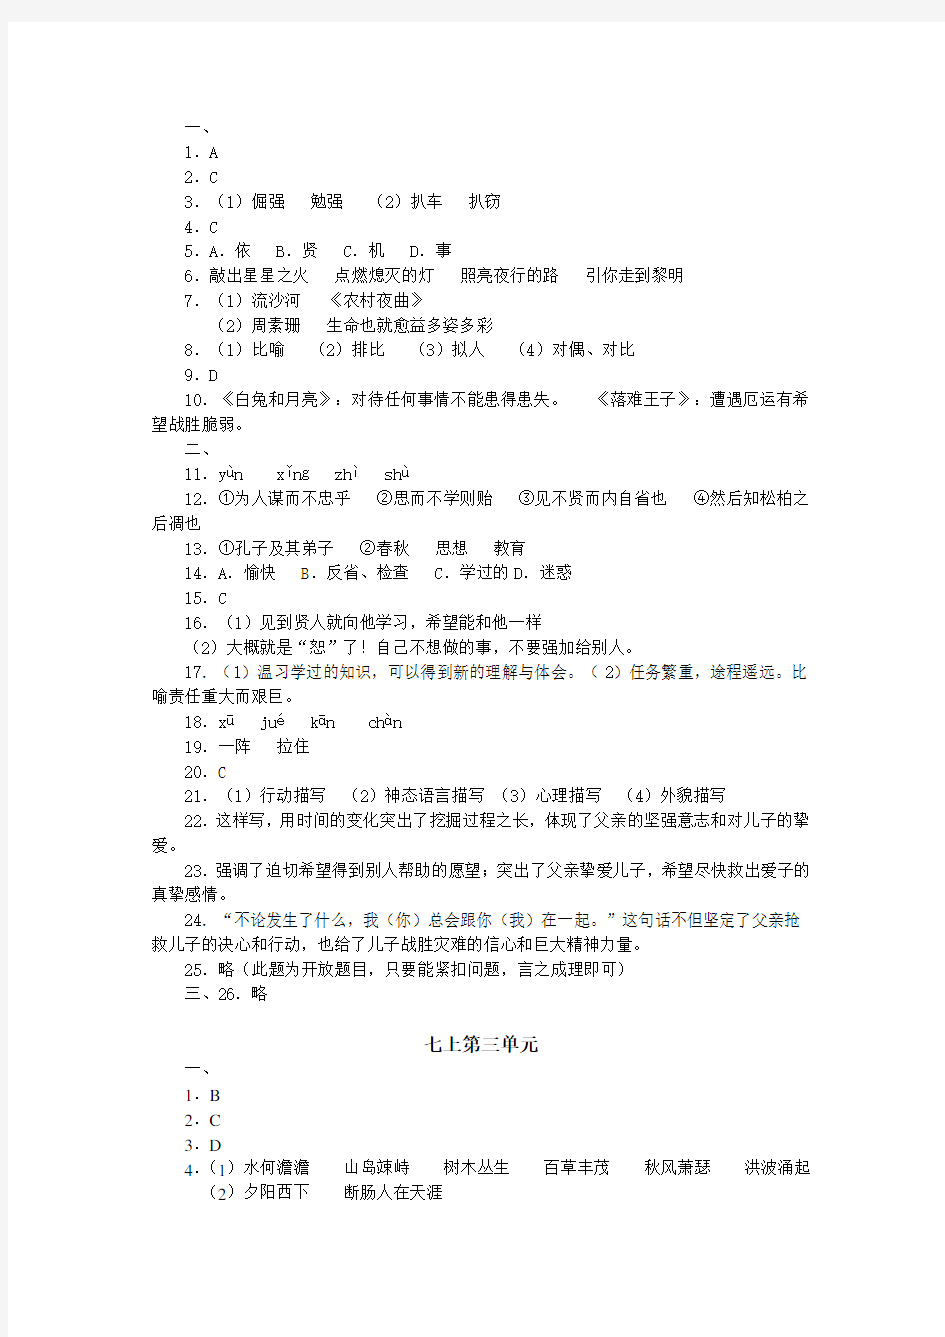 中山市2009-2010学年上学期初中语文单元题参考答案